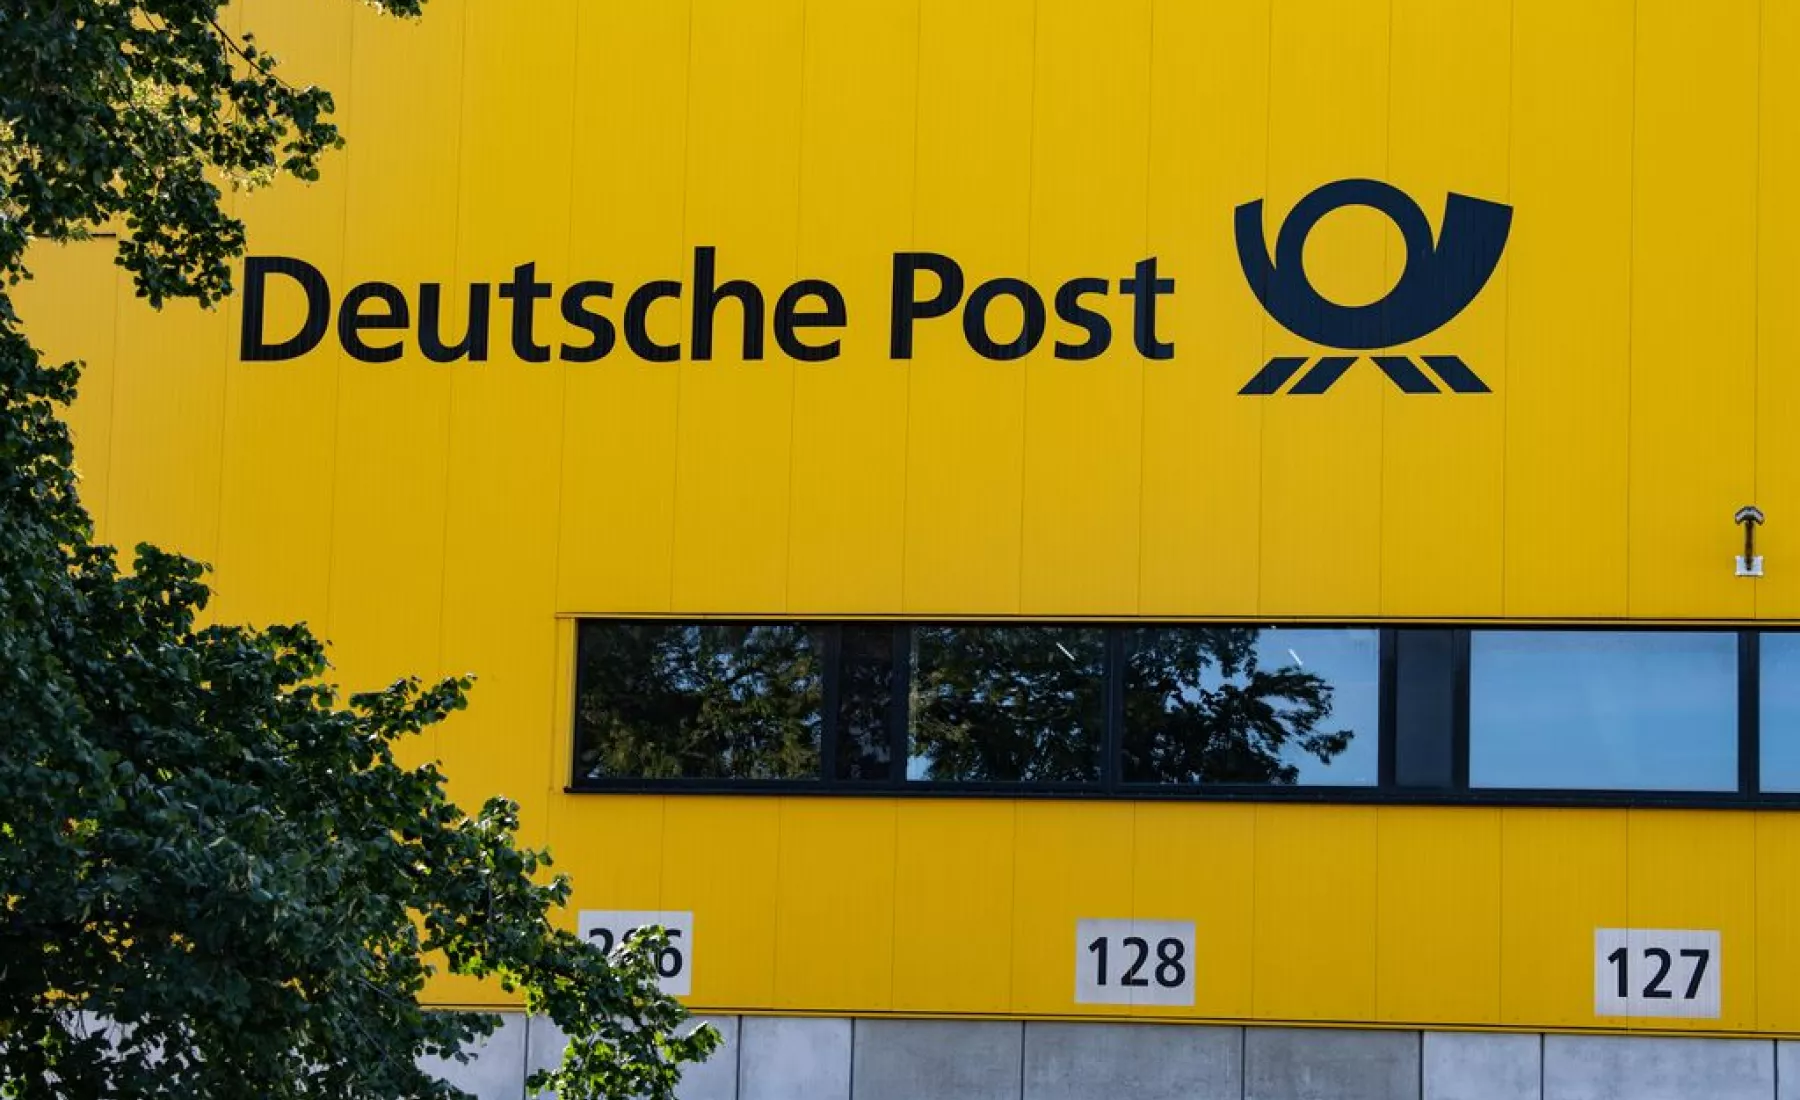 Berlin: "Deutsche Post" steht auf der Fassade der Paketzustellbase am Rohrdamm